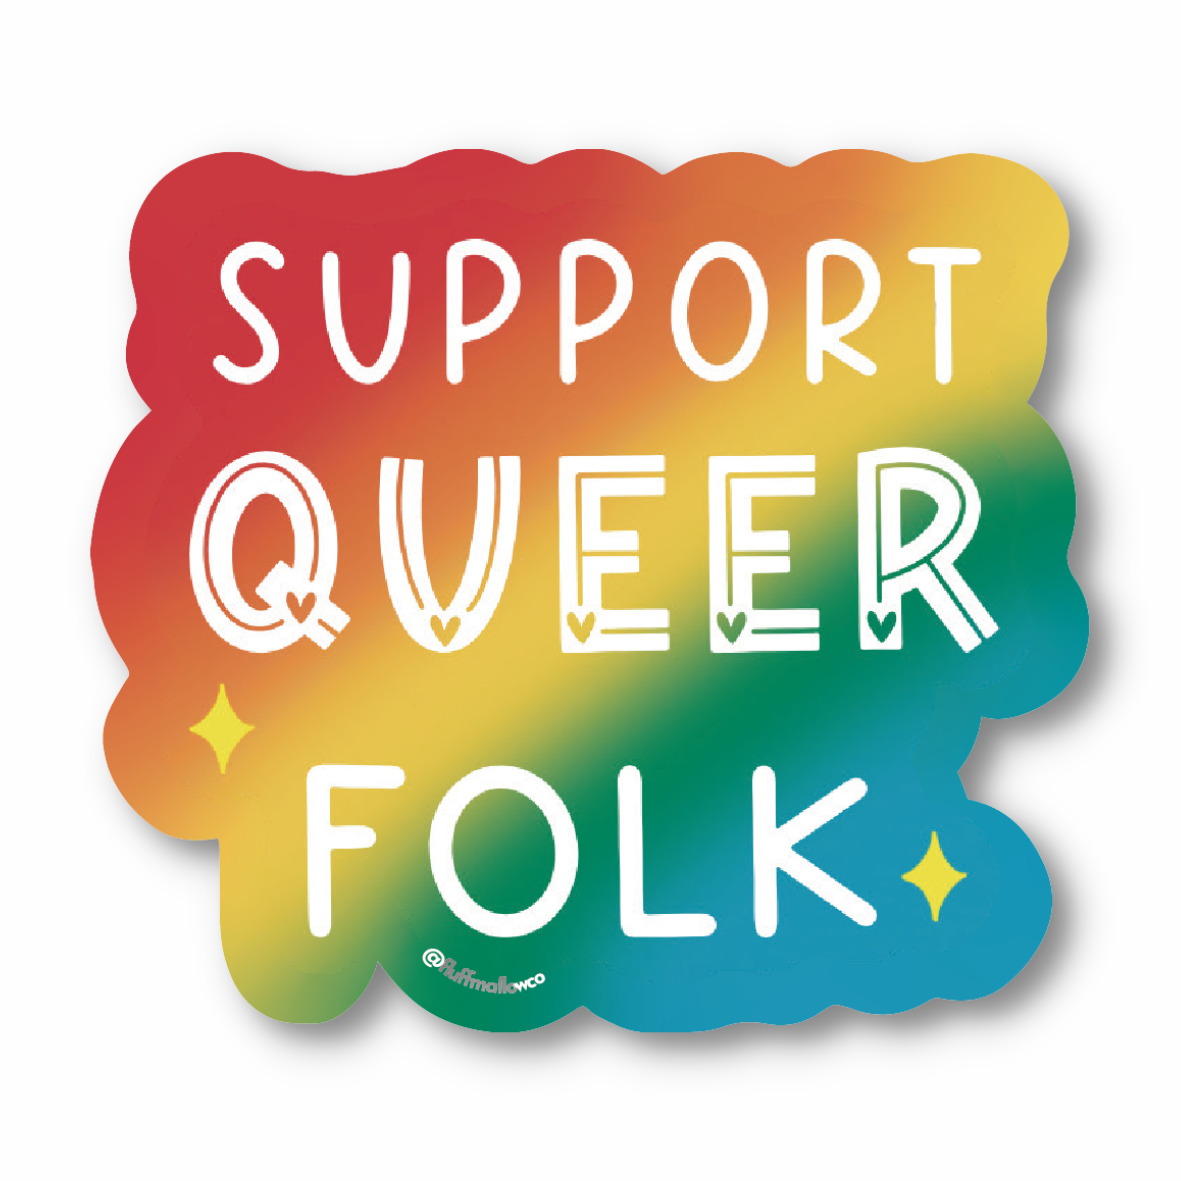 Support queer folk vinyl sticker